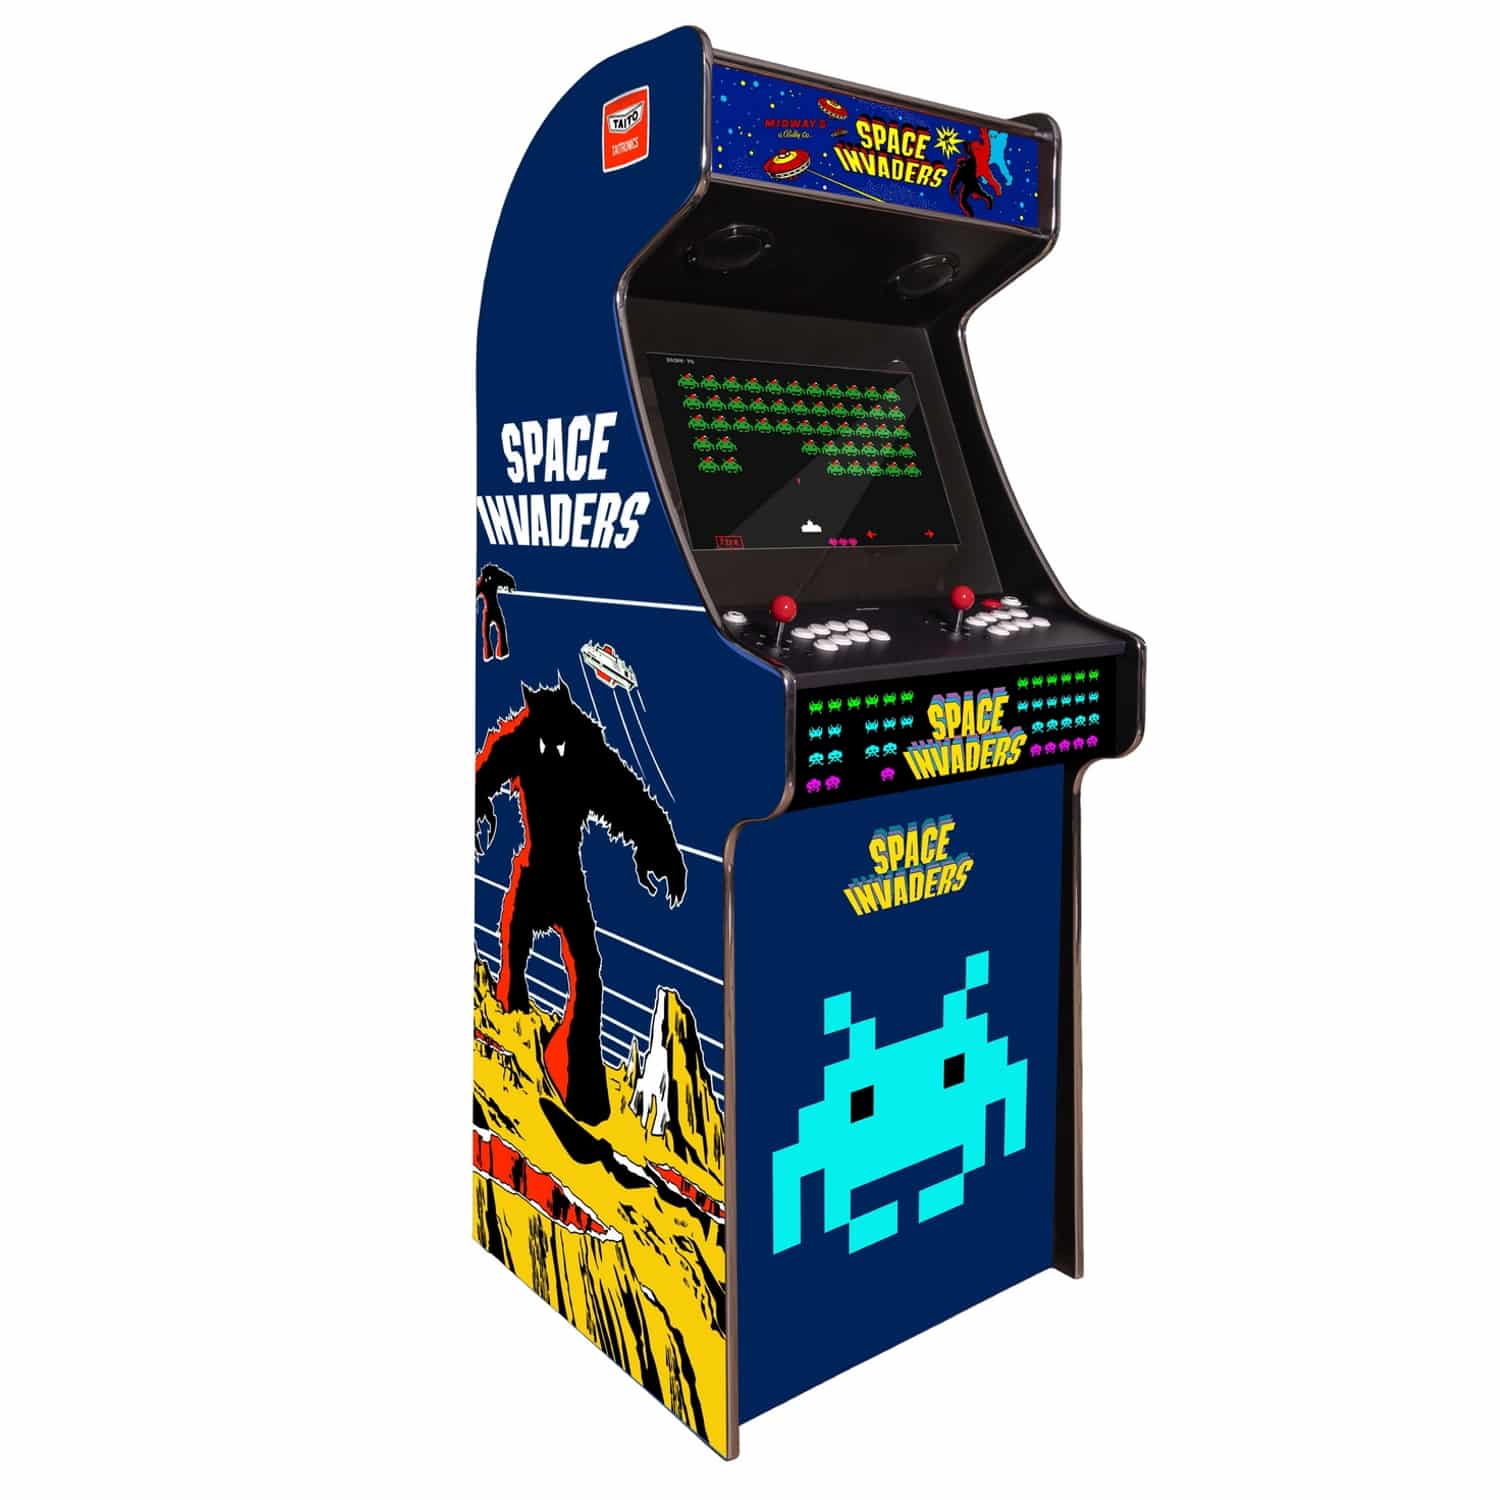 arcade machine borne born jeux cafe anciens retro recalbox neuve moderne hdmi pas cher vente achat prix france belgique spaceinvaders - Accueil